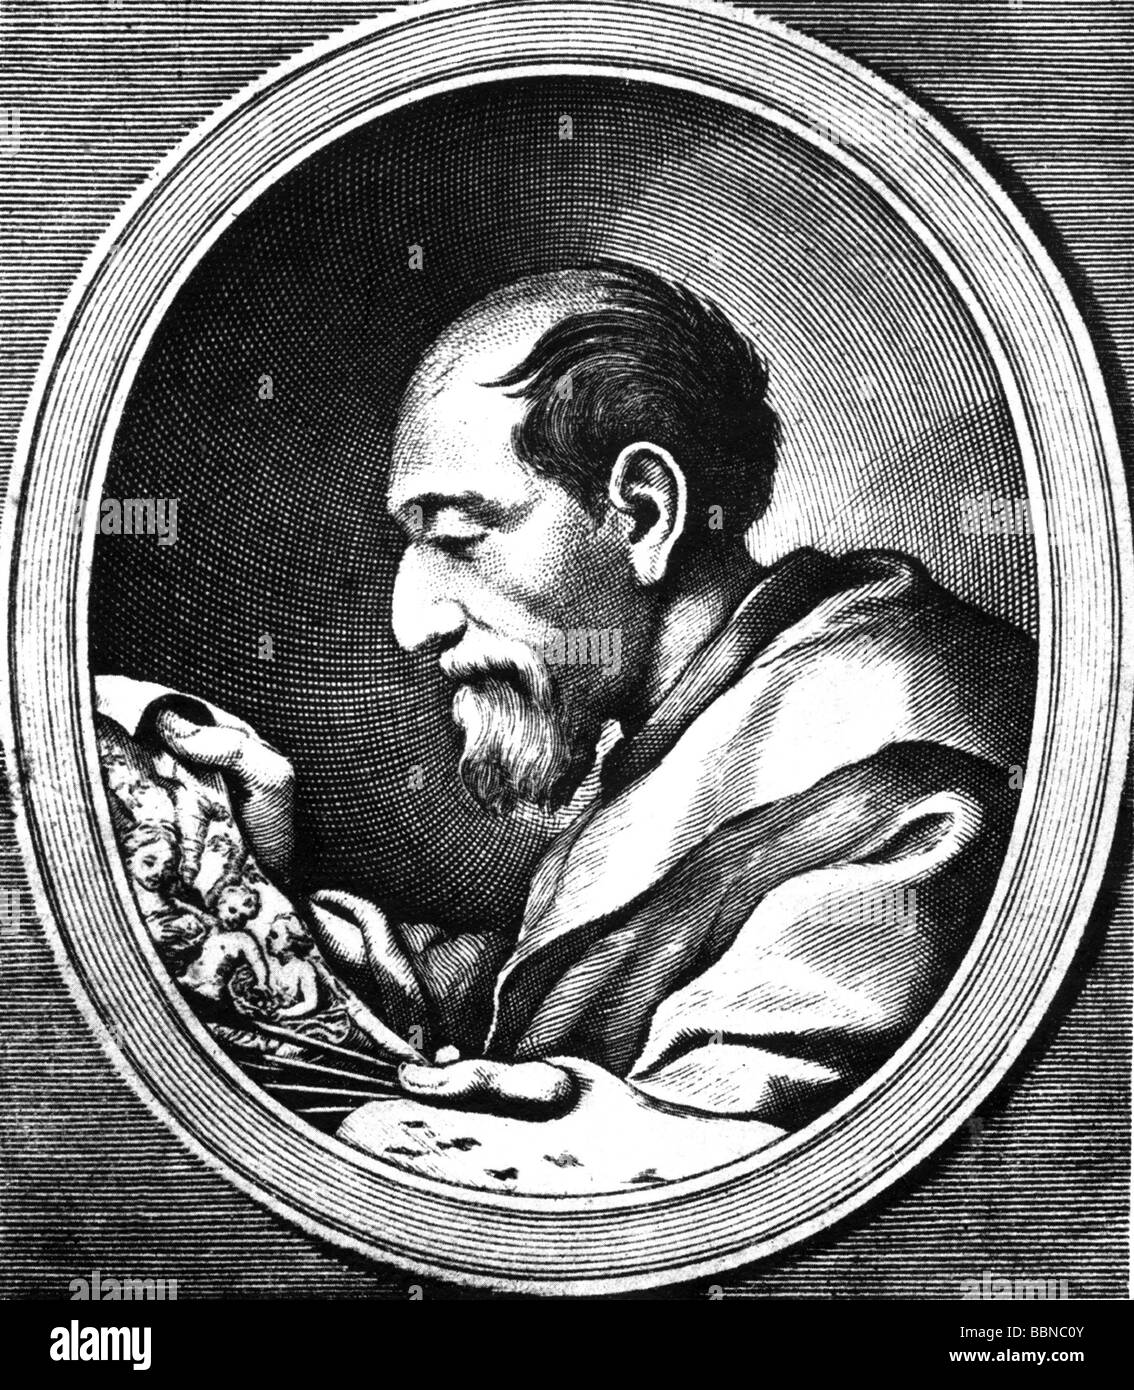 Correggio, Antonio Allegri da, ca.1494 - 5.3.1534, artista italiano (pittore), incisione anonima, pubblicata da Petit, Parigi, dopo disegno di A. Besutius, , Foto Stock